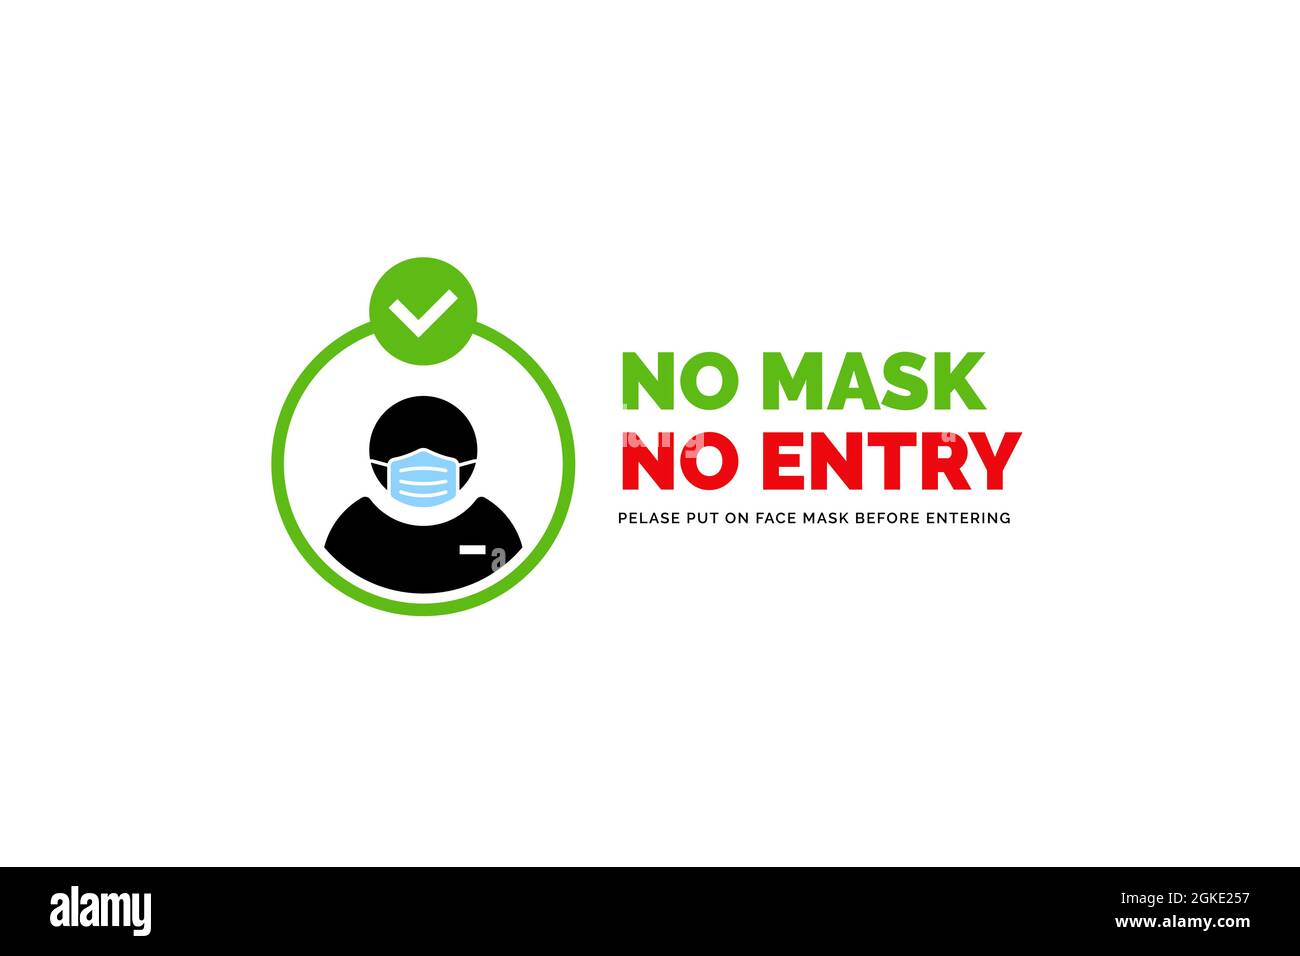 Warnschild für Gesichtsmaske erforderlich. Keine Gesichtsmaske, kein Eintrittsschild. Menschliche Silhouette mit Gesichtsmaske in abgerundetem Rahmen. Stockfoto